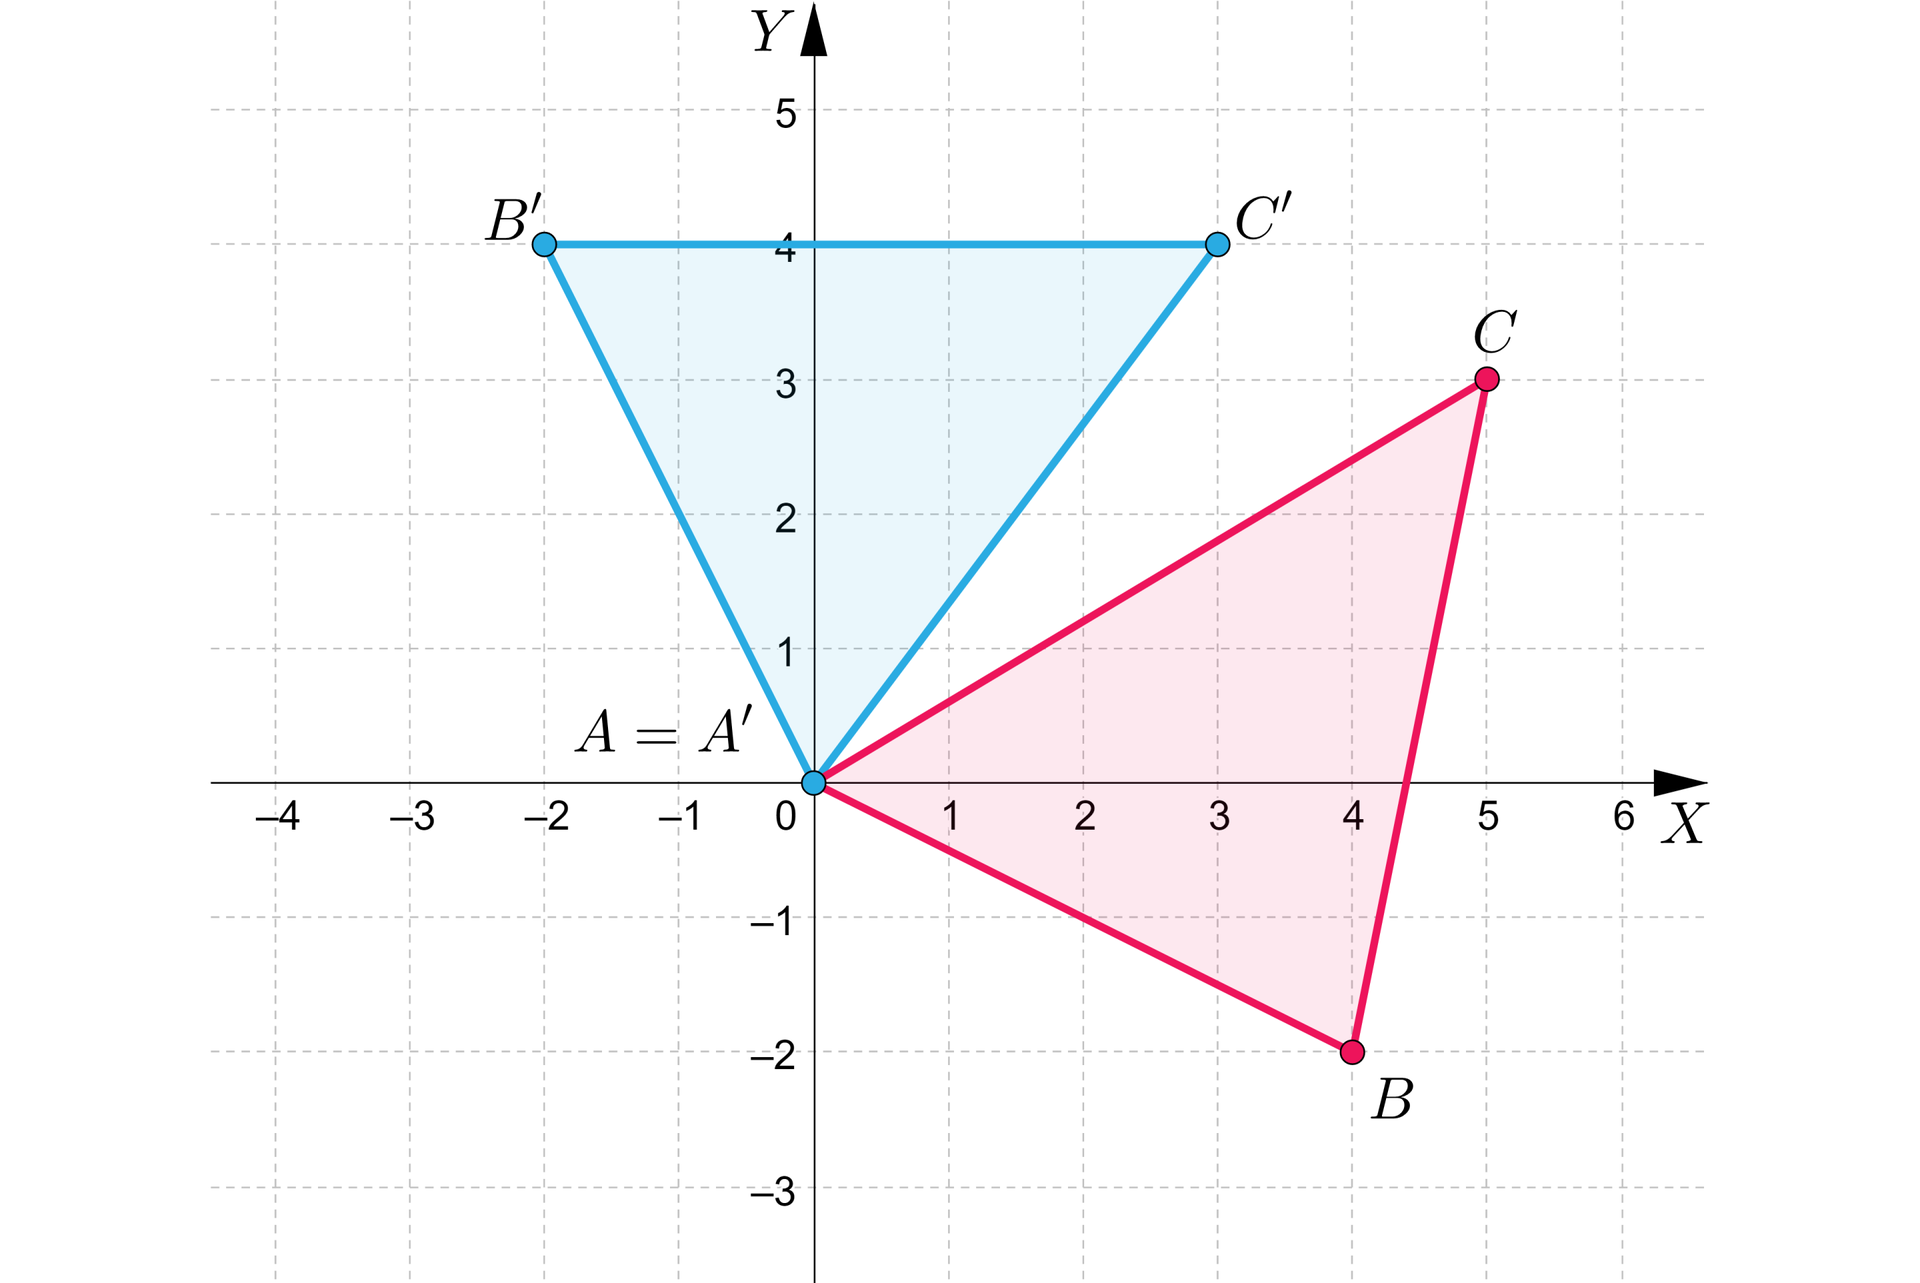 Grafika przedstawia układ współrzędnych o pionowej osi y od minus 3 do 5 i poziomej osi x od minus 4 do sześciu. Na płaszczyźnie znajdują się dwa trójkąty. Pierwszy o wierzchołkach: A, B, C. Punkt A ma współrzędne: nawias, 0, 0, zamknięcie nawiasu. Punkt B ma współrzędne: nawias, 4, minus 2, zamknięcie nawiasu. Punkt C ma współrzędne: nawias, 5, 3, zamknięcie nawiasu. Drugi o wierzchołkach: A’, B’, C’. Punkt A’ ma współrzędne: nawias, 0, 0, zamknięcie nawiasu. Punkt B’ ma współrzędne: nawias, minus 2, 4, zamknięcie nawiasu. Punkt C’ ma współrzędne: nawias, 3, 4, zamknięcie nawiasu.